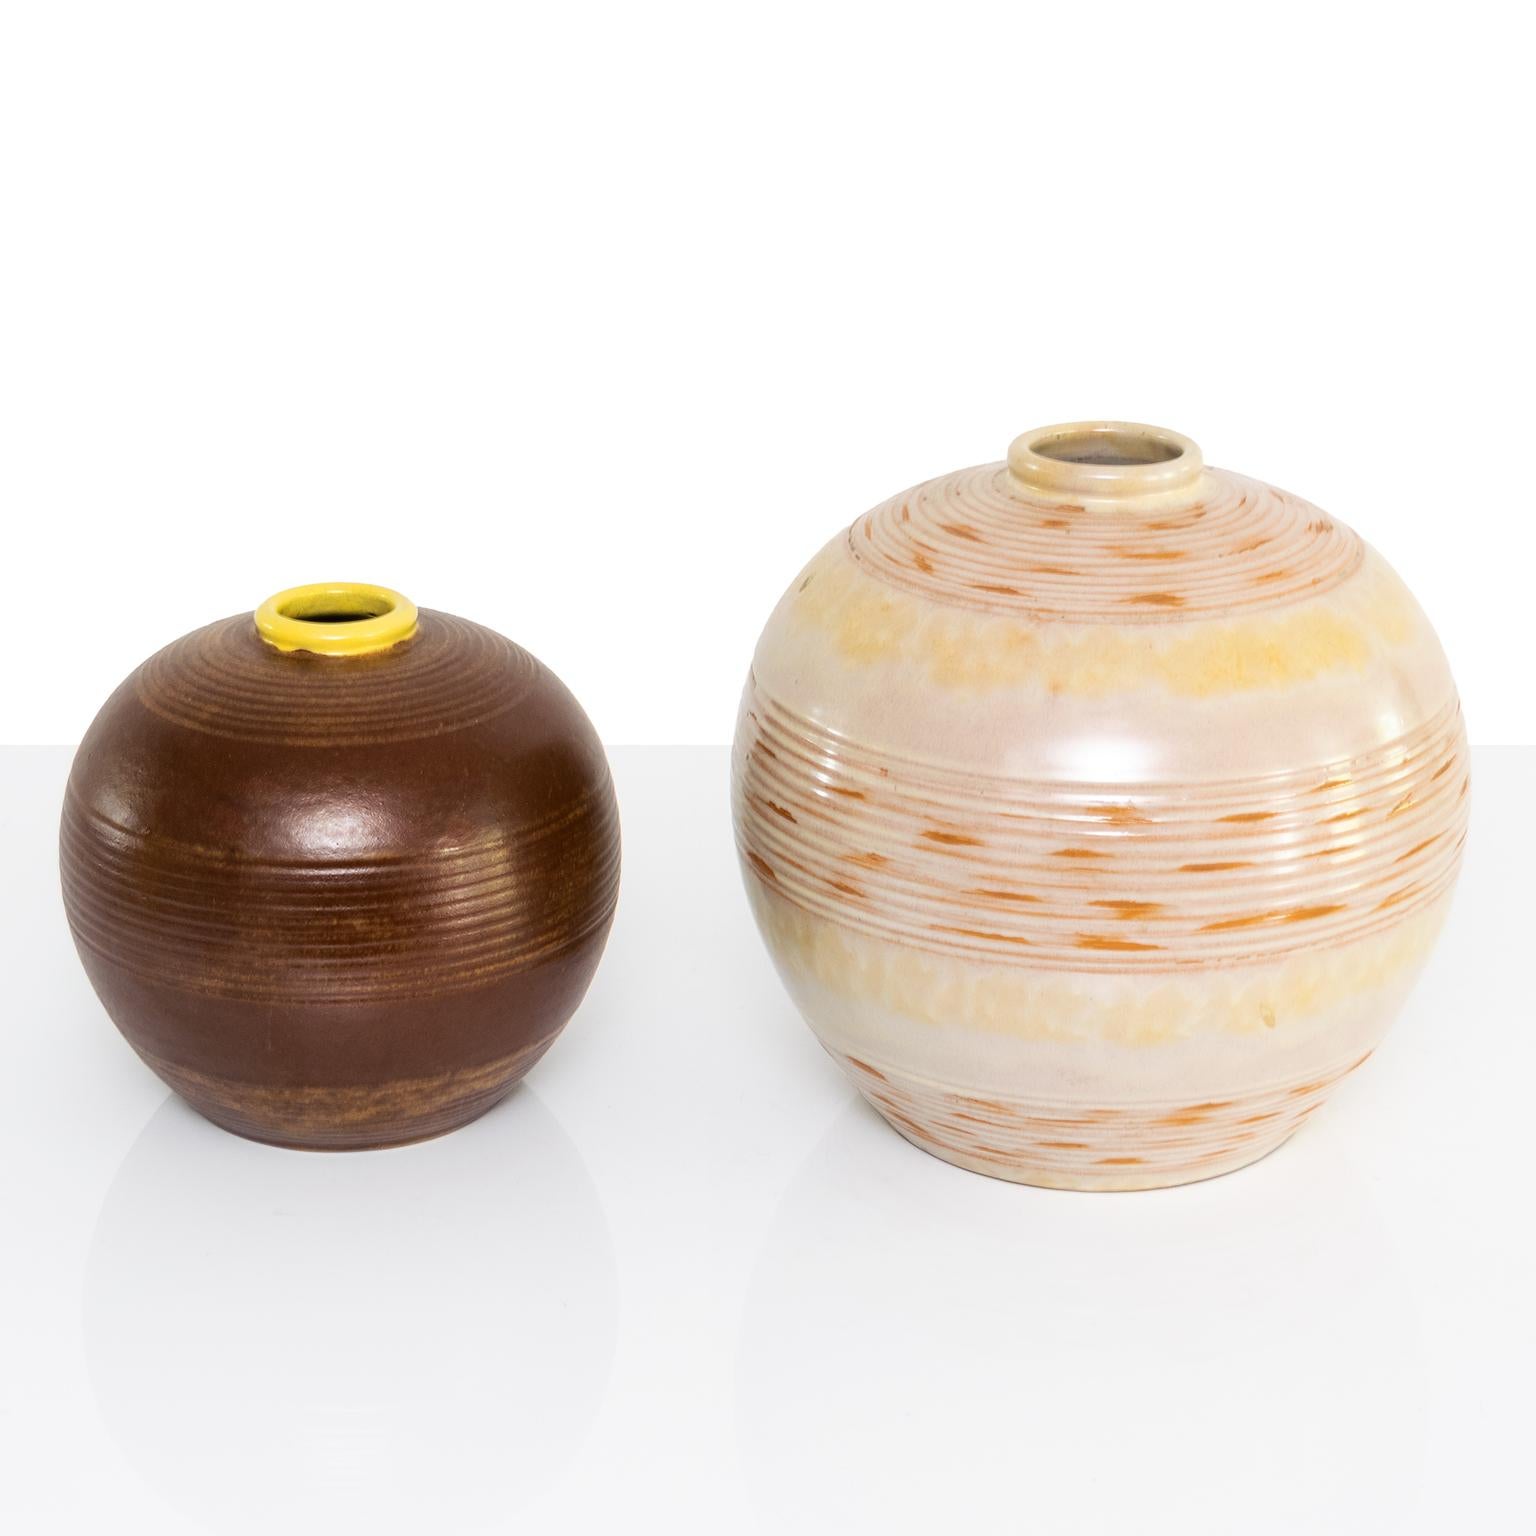 Zwei schwedische Vasen aus Keramik im Stil des Art déco und der skandinavischen Moderne mit horizontalen Linien und einer dünnen Glasur, die die Farbe des Tons erkennen lässt. Entworfen von Anna-Lisa Thomson für Upsala Ekeby. Signiert auf der